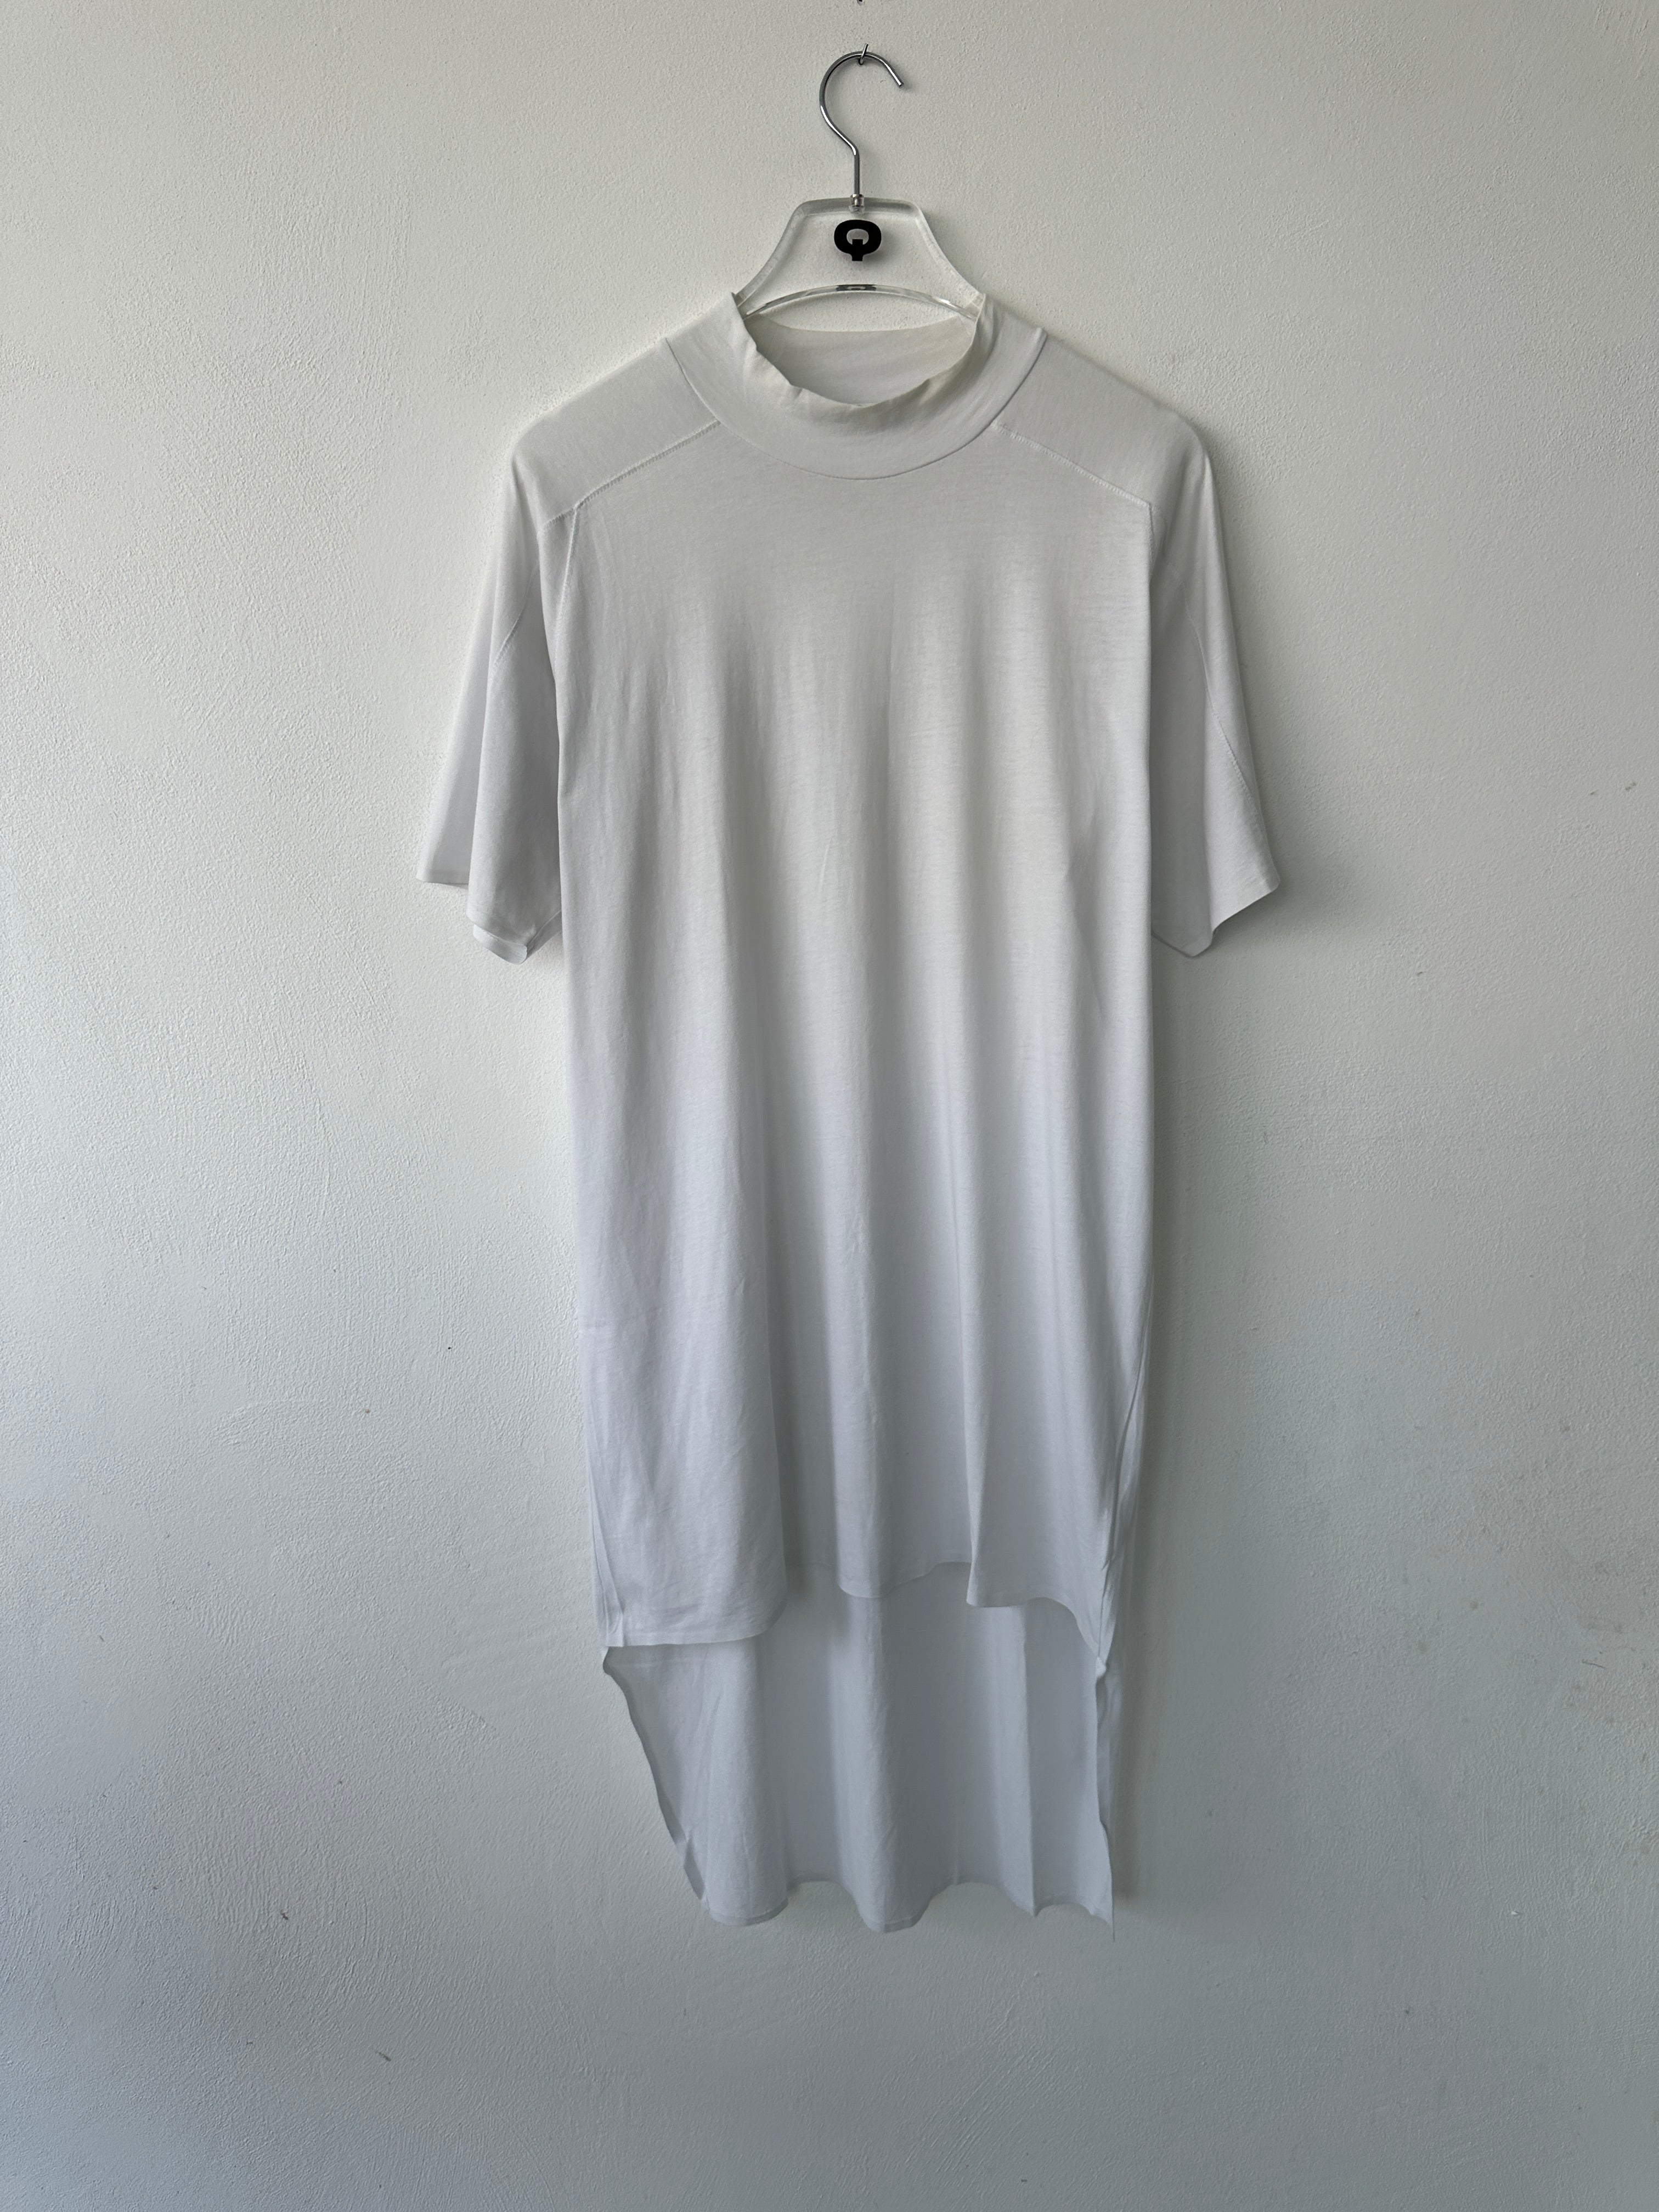 Adidas x Yamamoto Long T-shirt